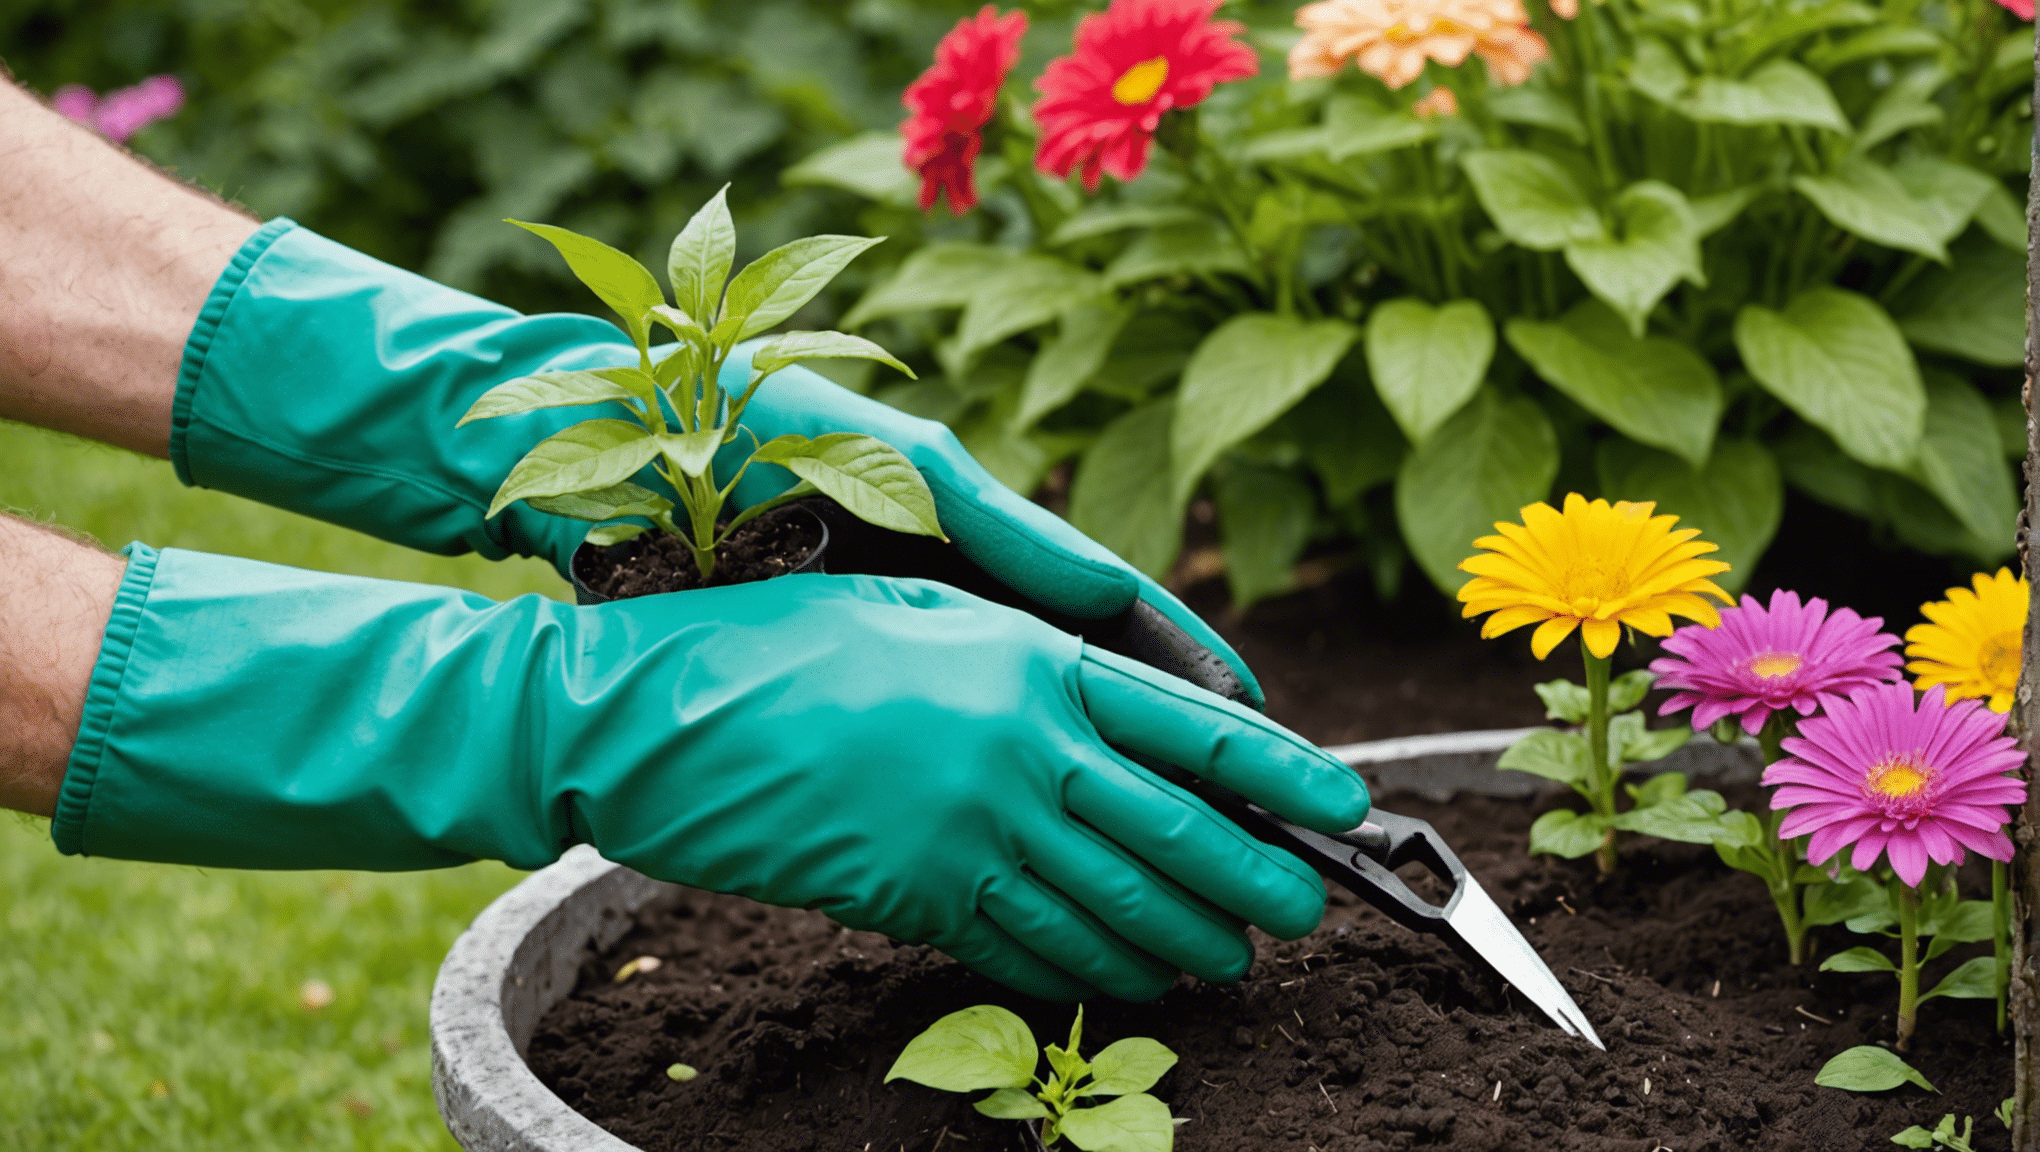 Entdecken Sie den Komfort von Gartenhandschuhen mit Krallen und verwandeln Sie Ihre Gartenarbeit mit Leichtigkeit und Effizienz.